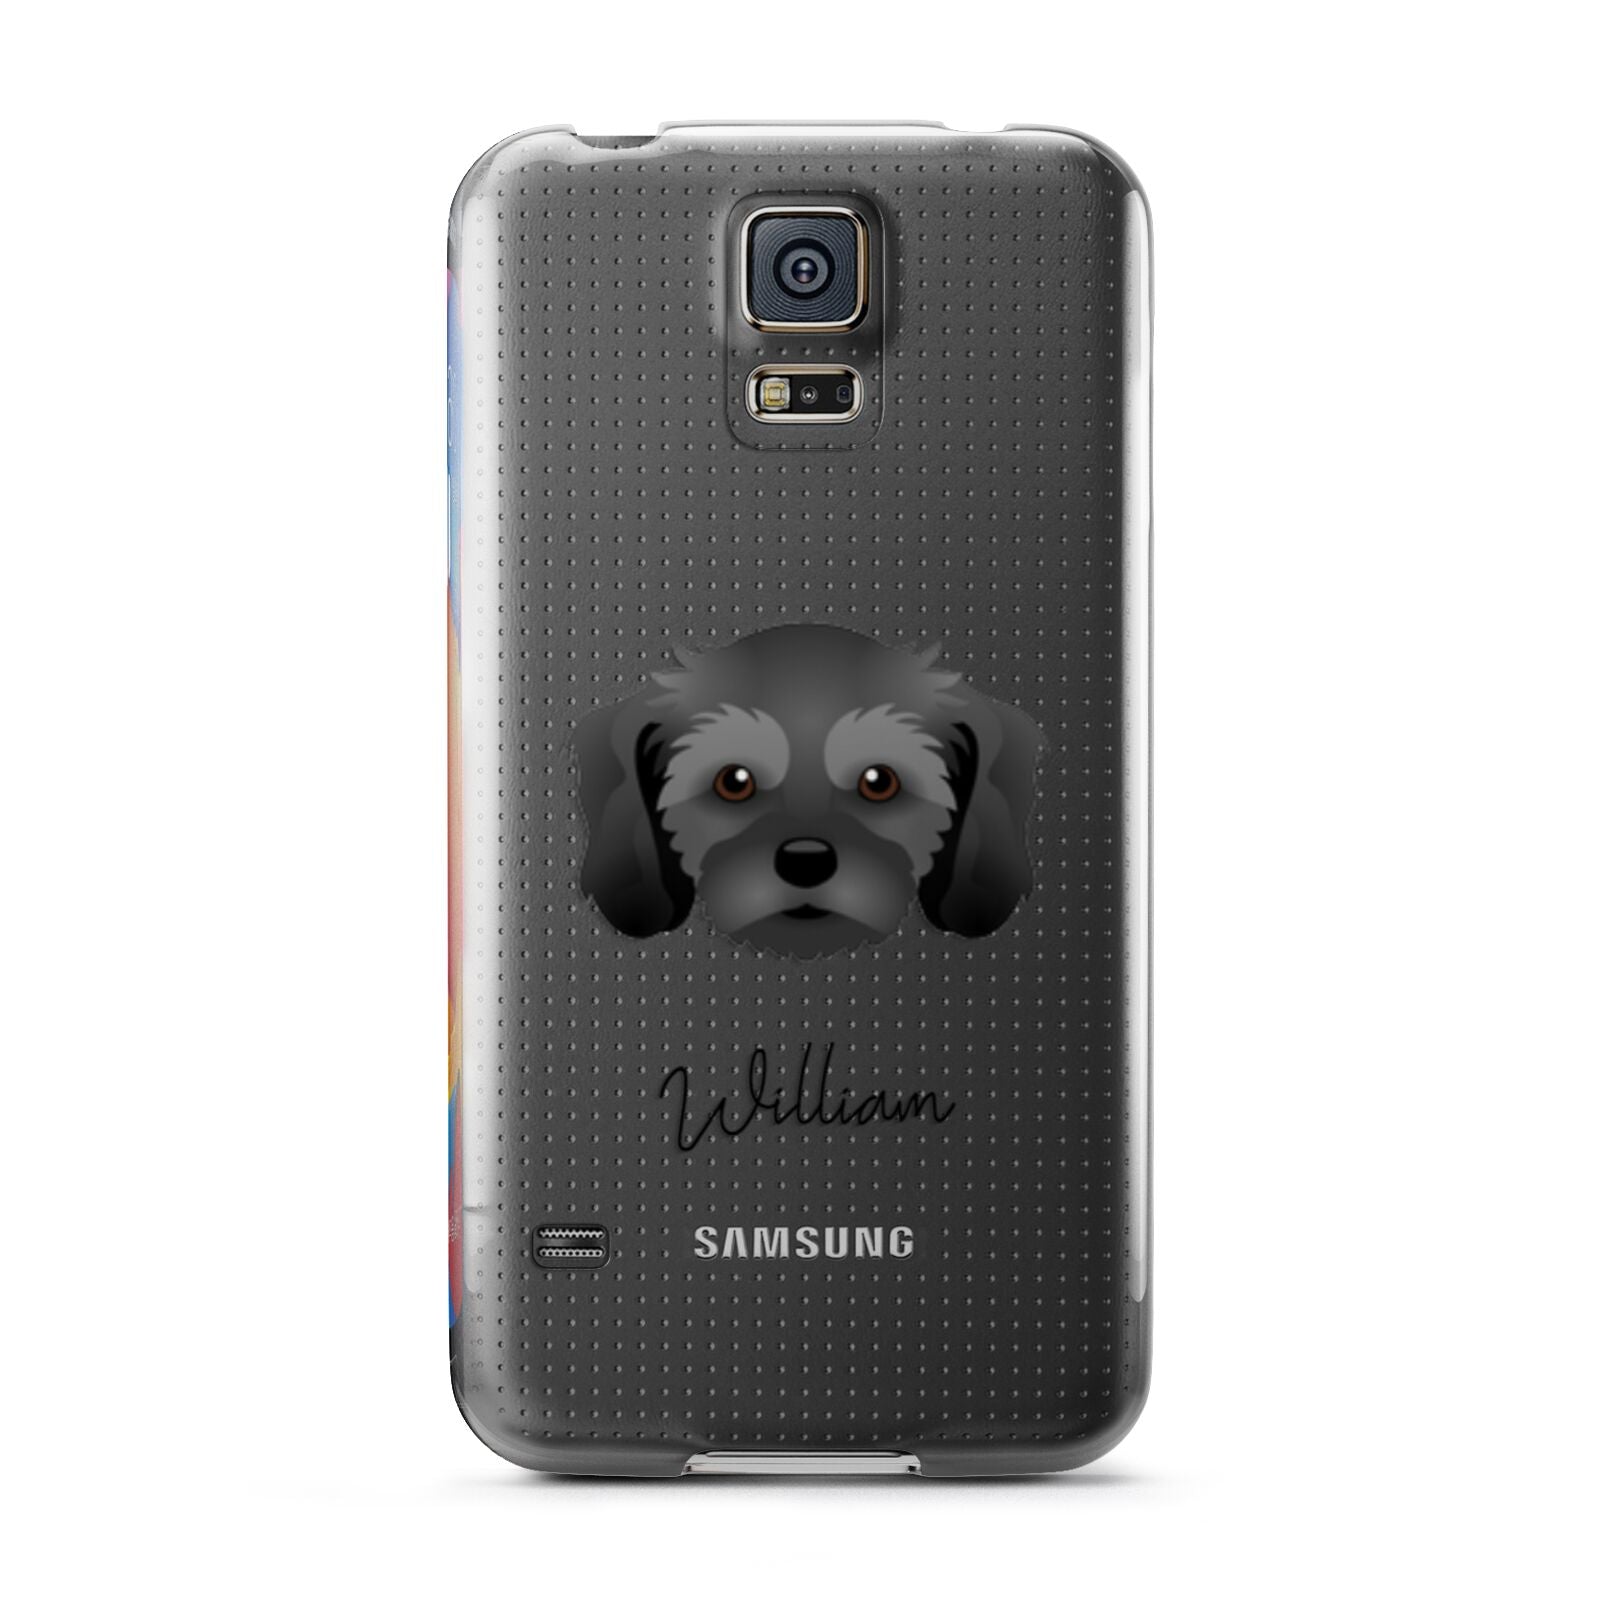 Cavachon Personalised Samsung Galaxy S5 Case